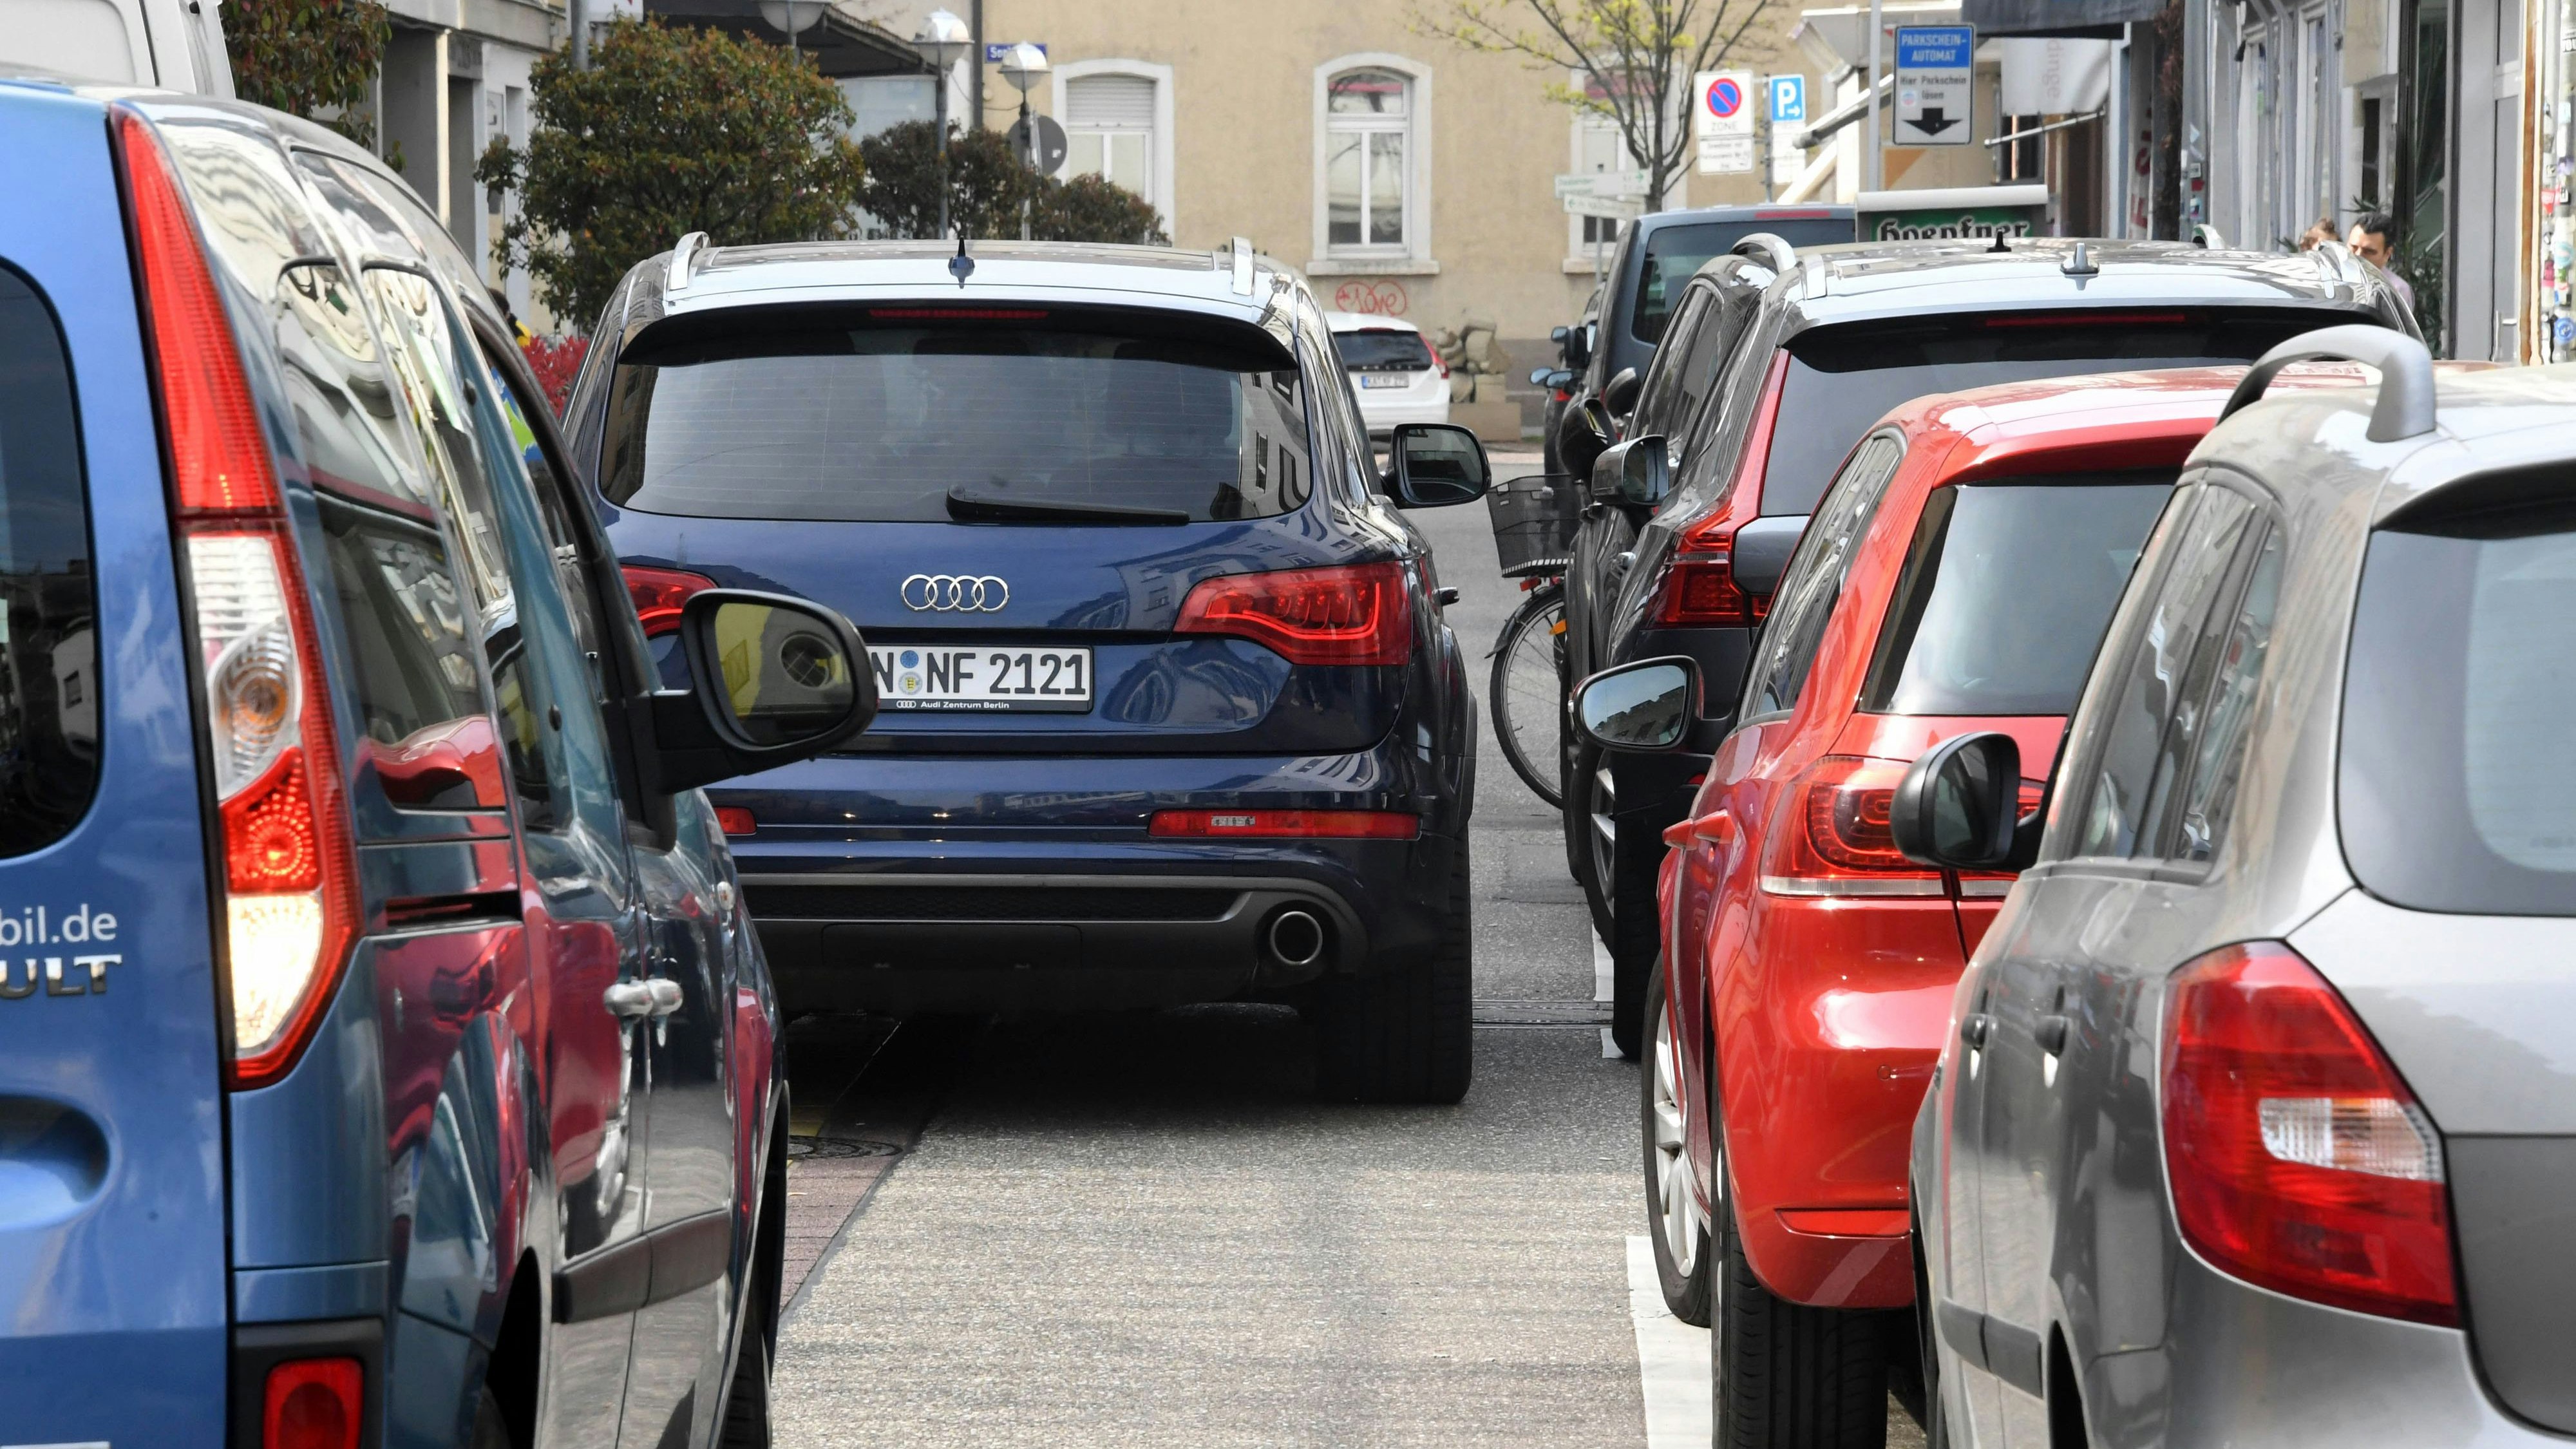 Die Zahl der zugelassenen Kraftfahrzeuge wächst im Oldenburger Münsterland immer weiter. In manchen Kommunen sind bereits mehr als 900 Fahrzeuge je 1000 Einwohner registriert.&nbsp; &nbsp;Foto: dpa/Deck